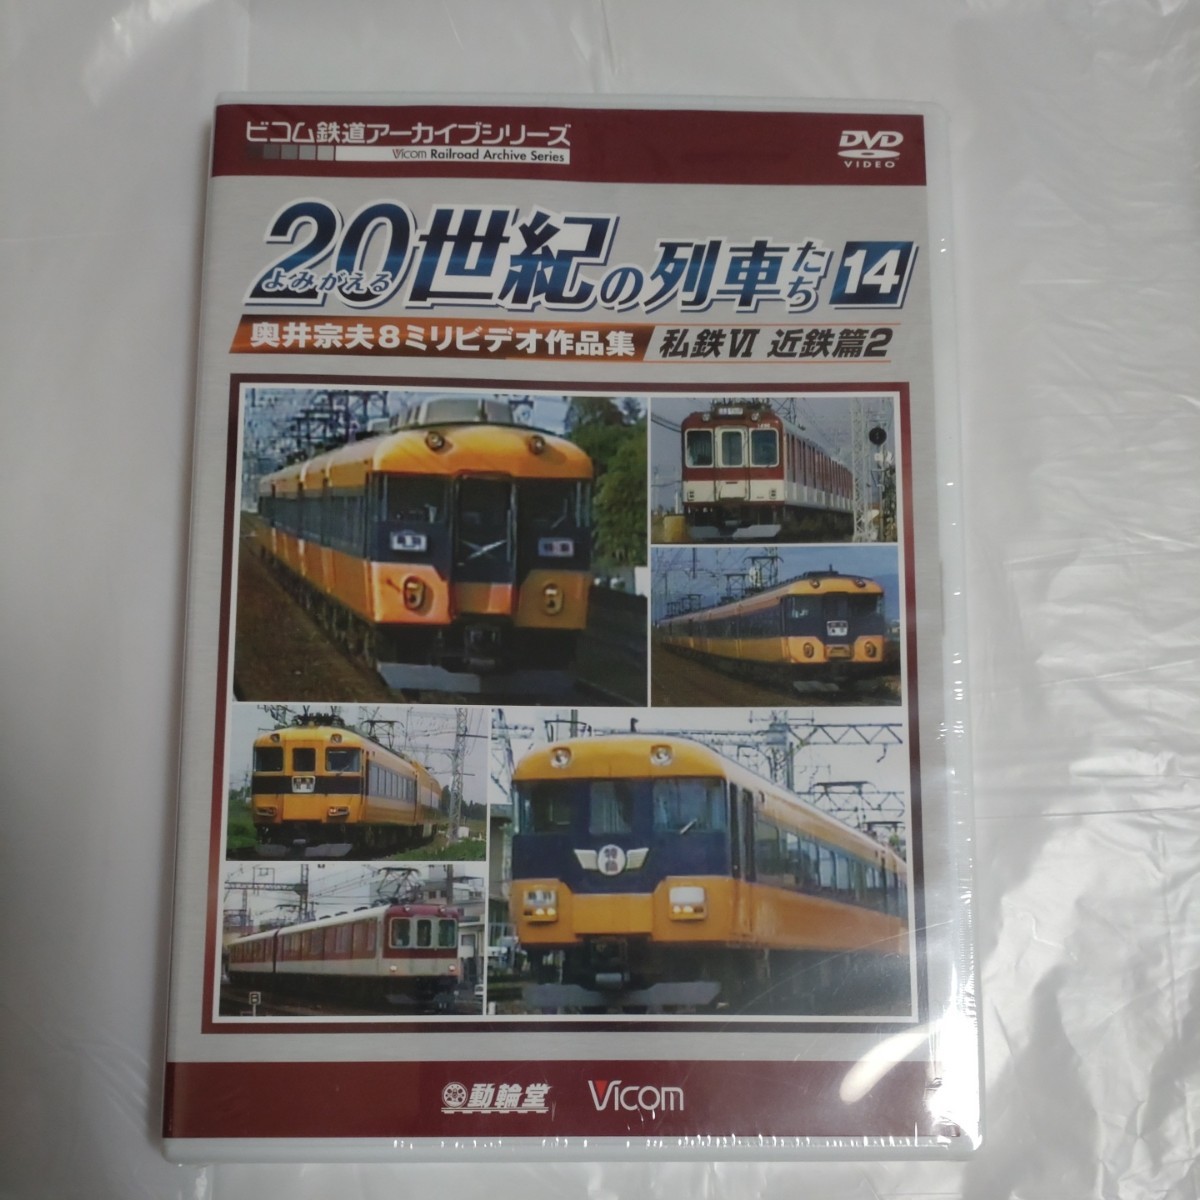 よみがえる20世紀の列車たち14 私鉄VI 近鉄篇2 奥井宗夫8ミリビデオ作品集 DVD_画像1